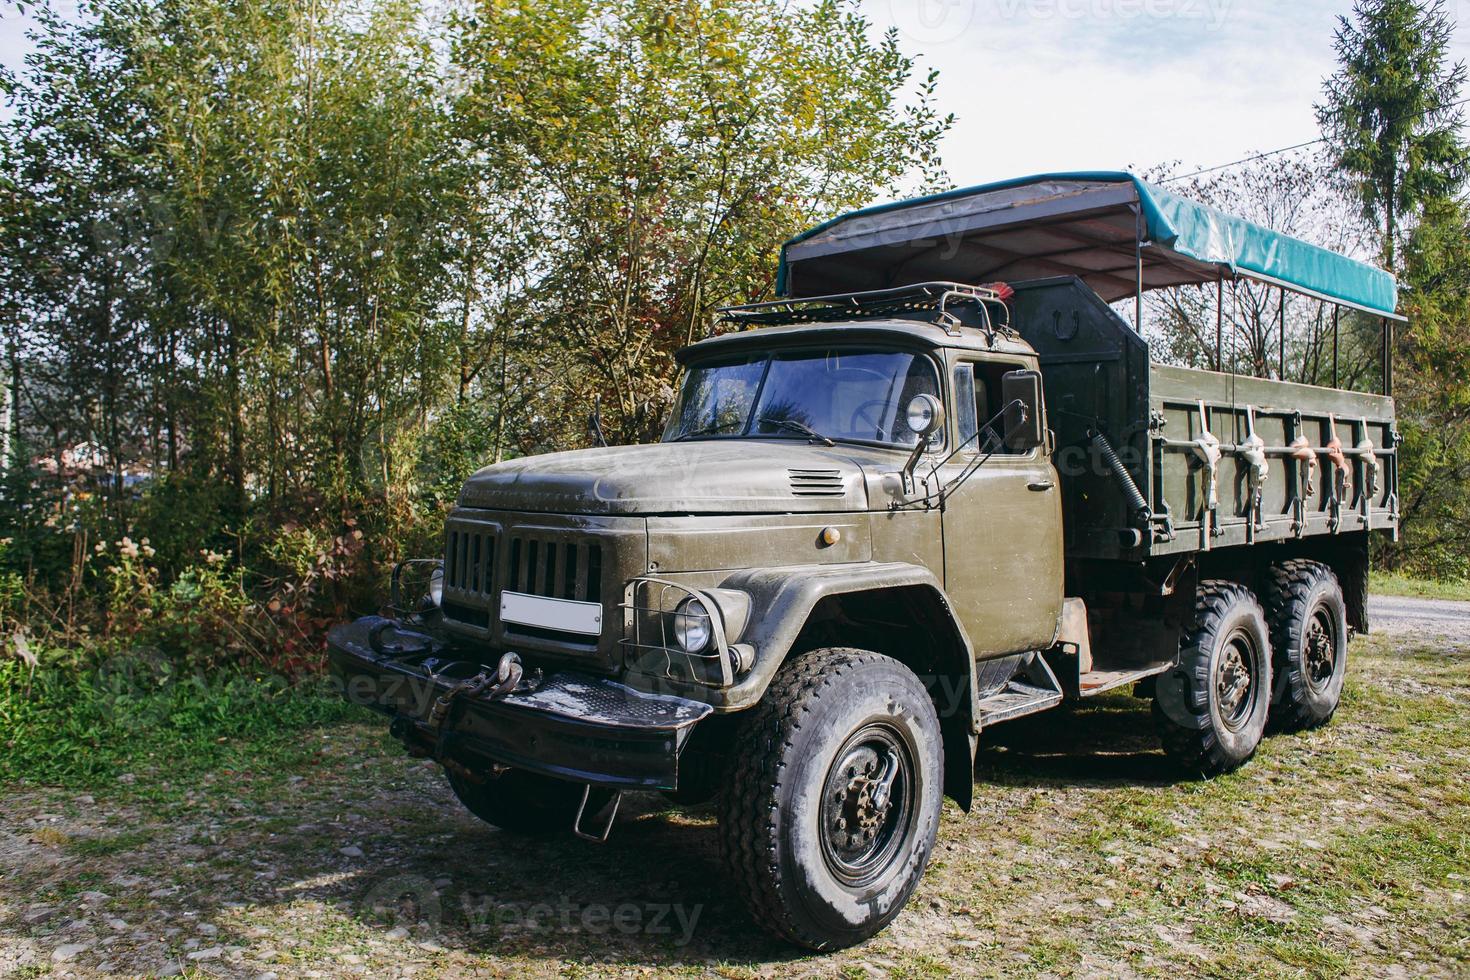 Sovjet-vrachtwagen in de Karpaten vervoert mensen op excursies. foto